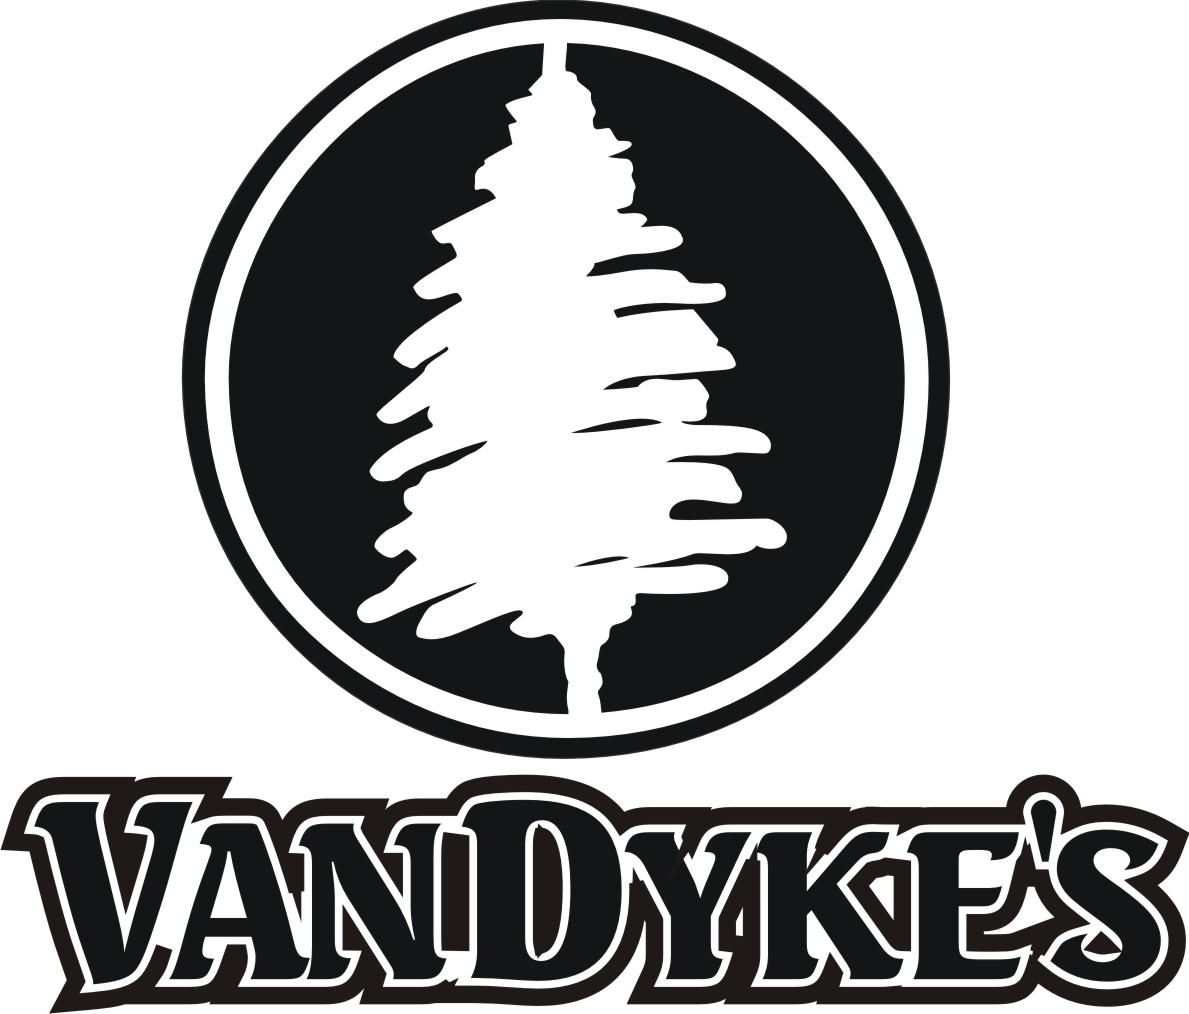 VanDyke's